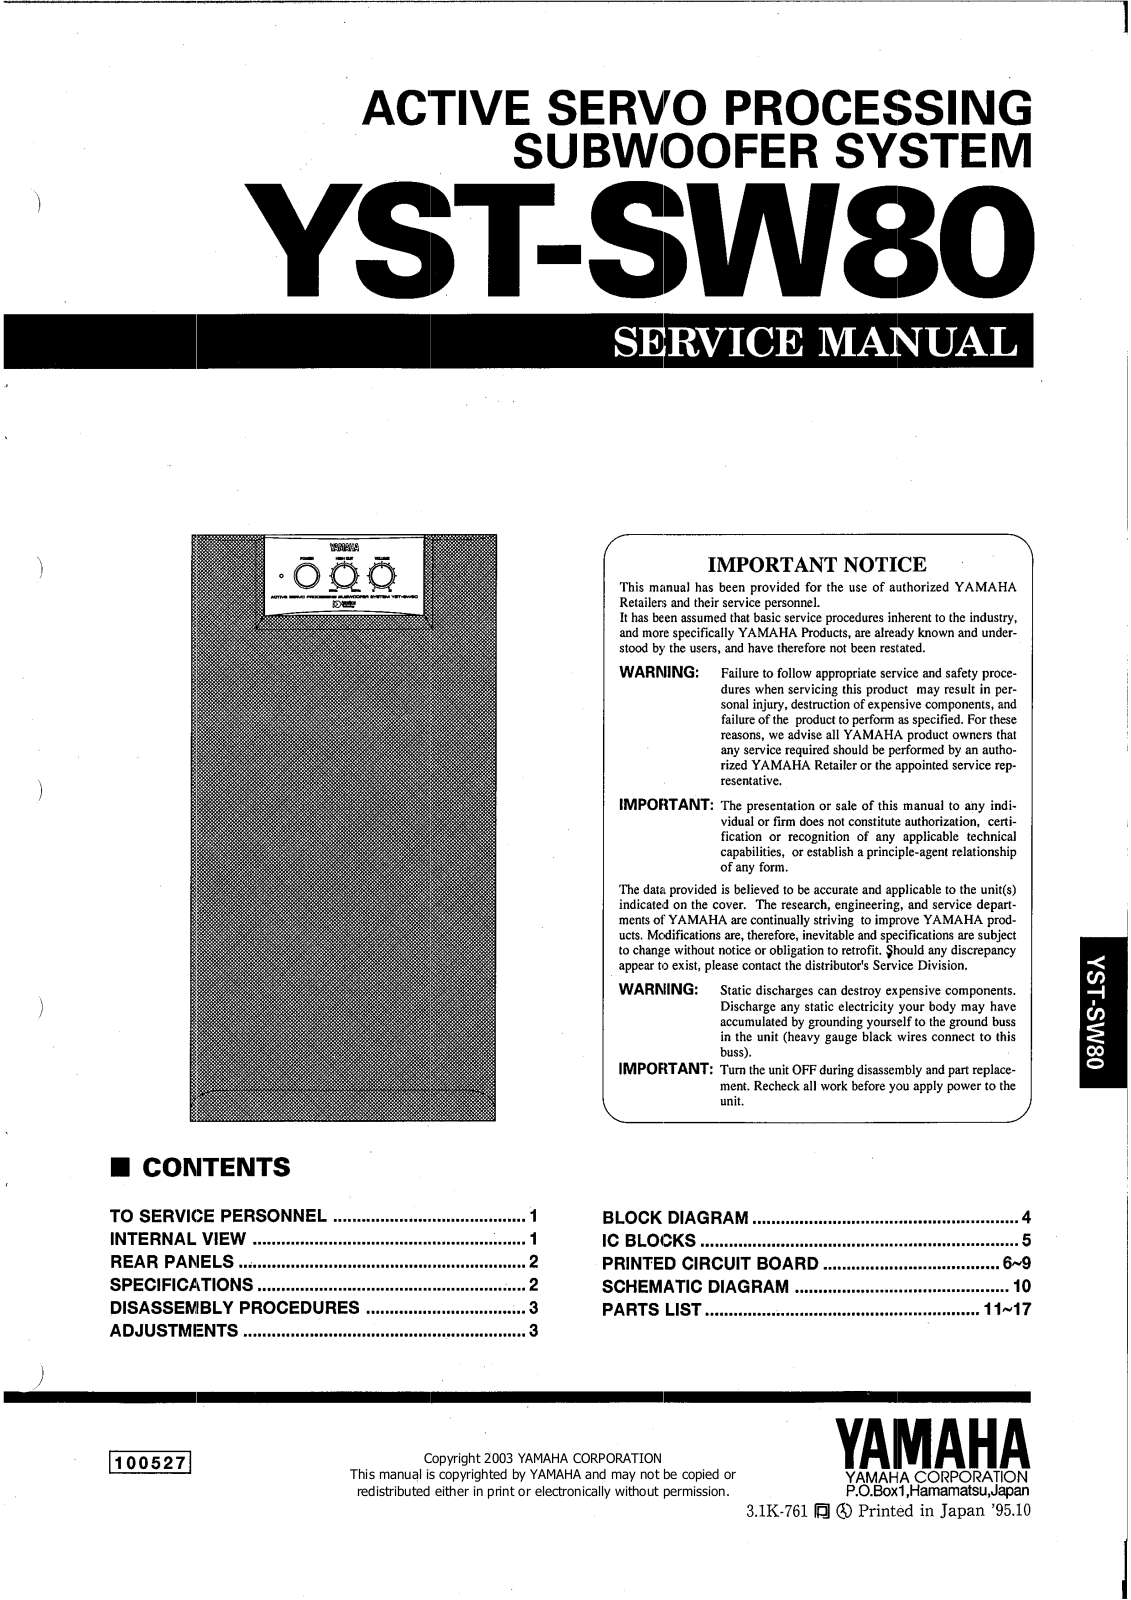 Yamaha YST-SW80 Service Manual